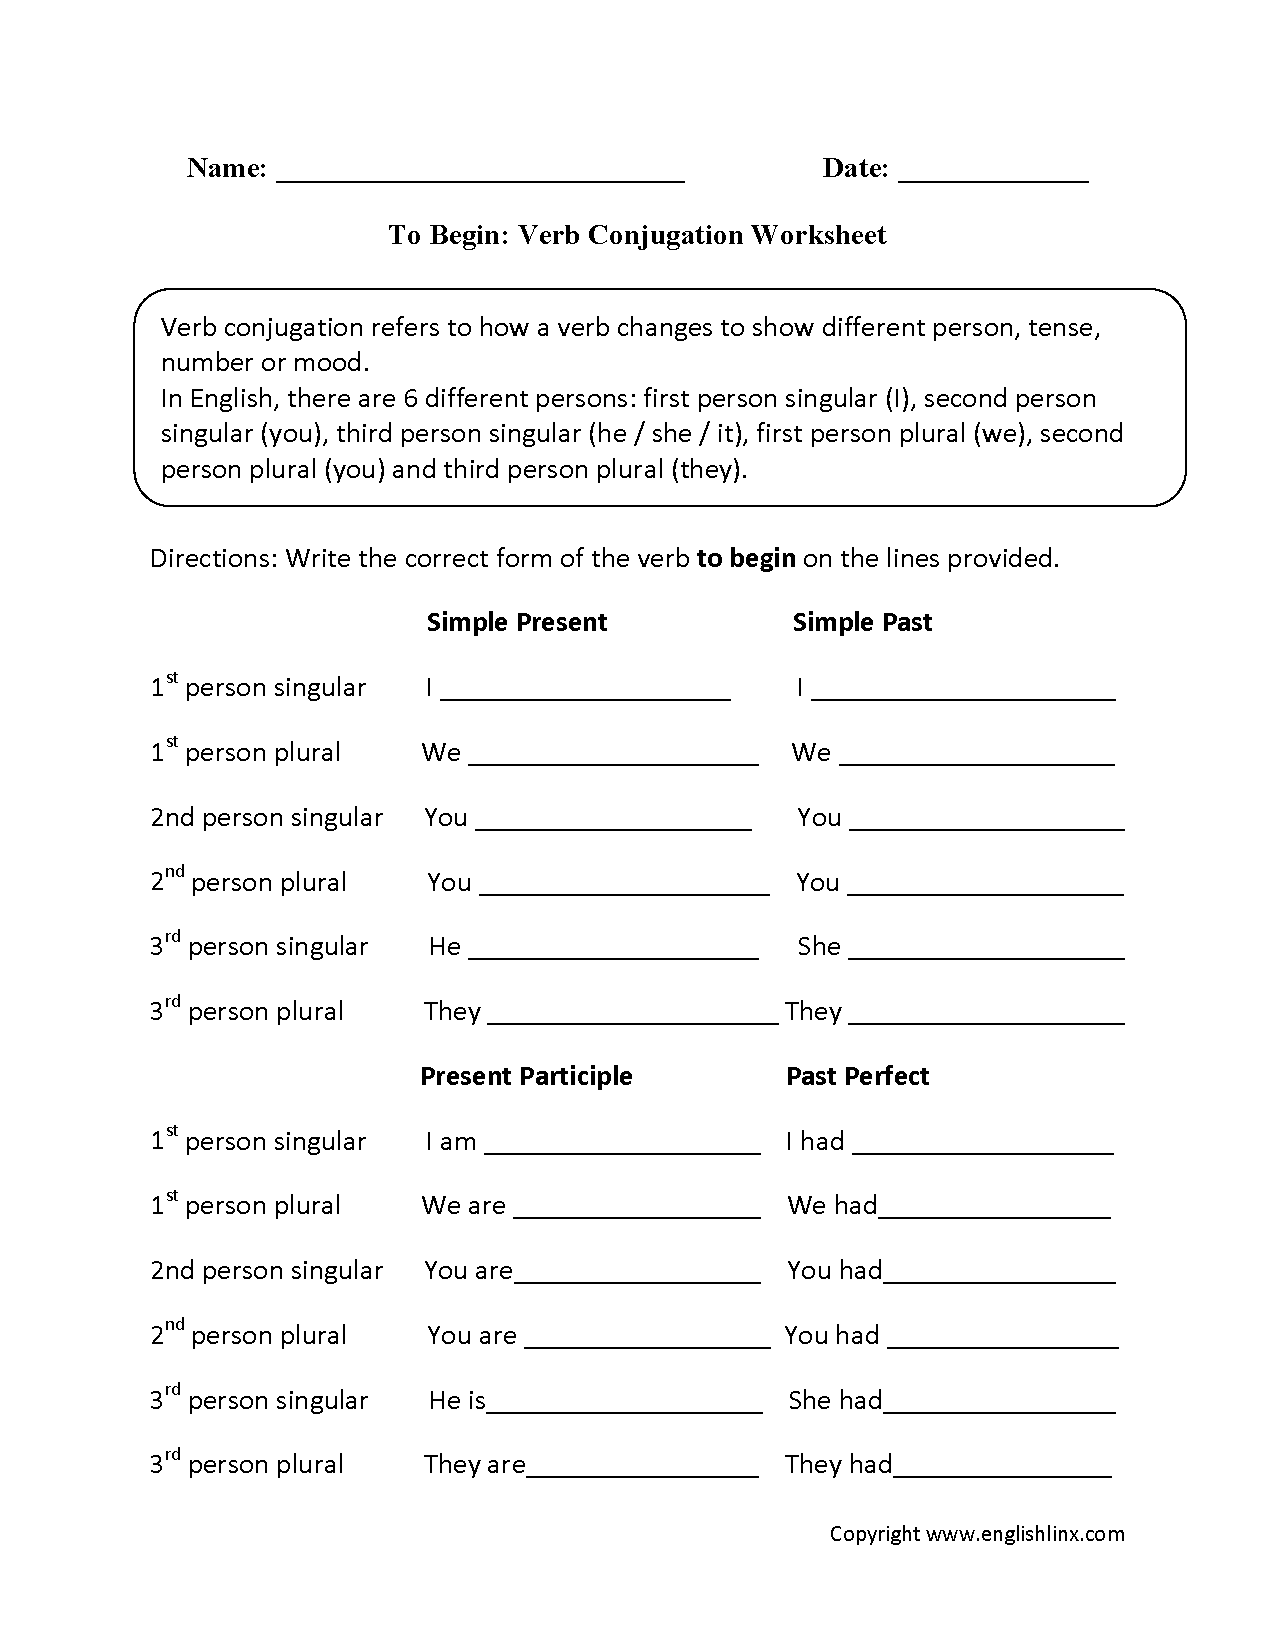 To Begin Verb Conjugation Worksheets